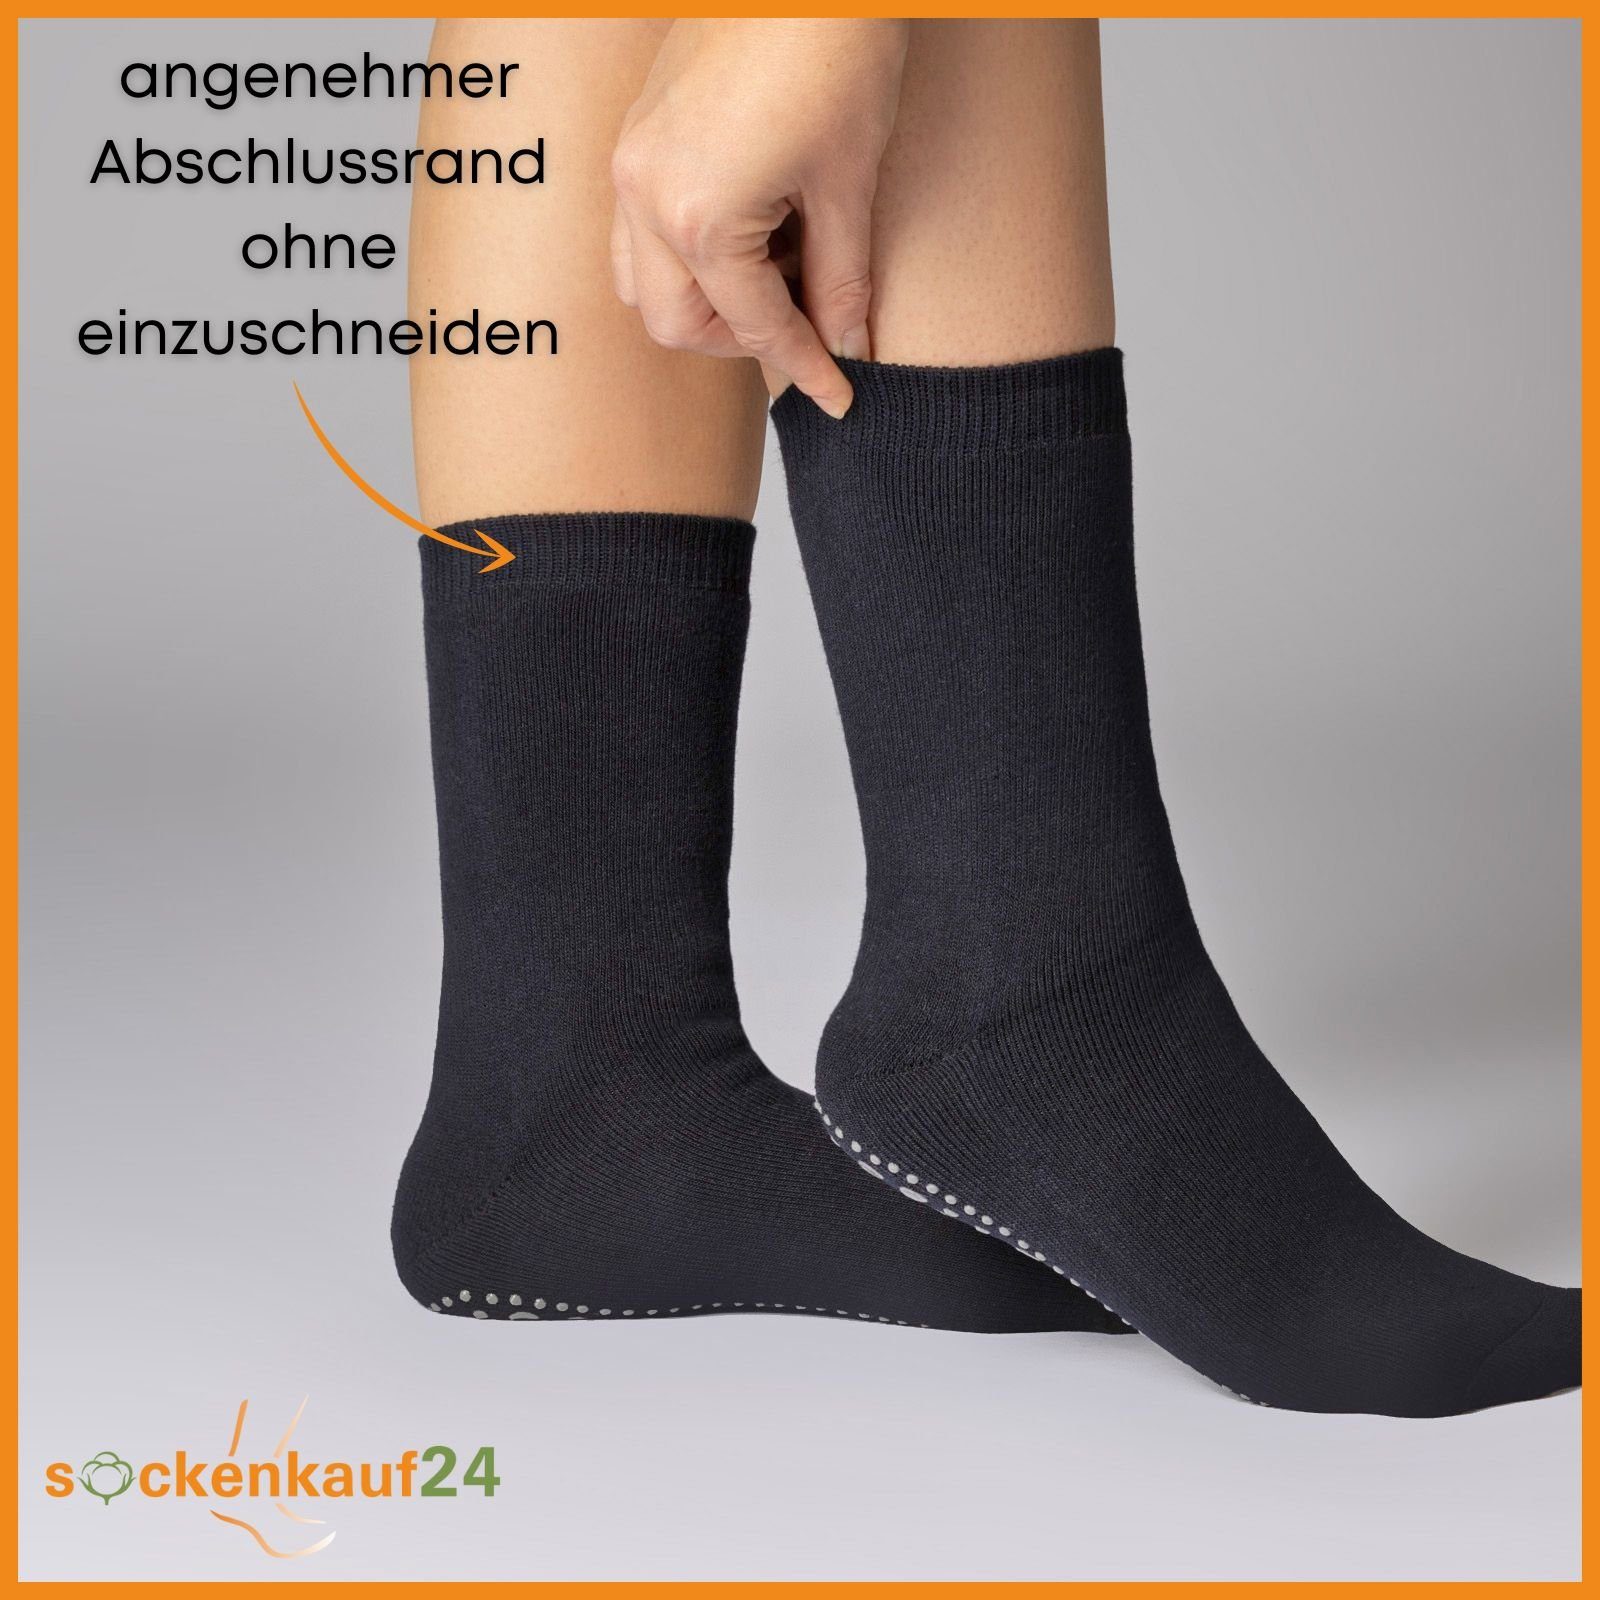 Rutsch sockenkauf24 "Premium" oder Herren 6 43-46) Damen - 8600 WP Schwarz-Blau-Grau Socken 3-Paar, ABS-Socken Socken Stoppersocken Anti ABS Blau, Noppen (Schwarz, 3 Paar Grau,